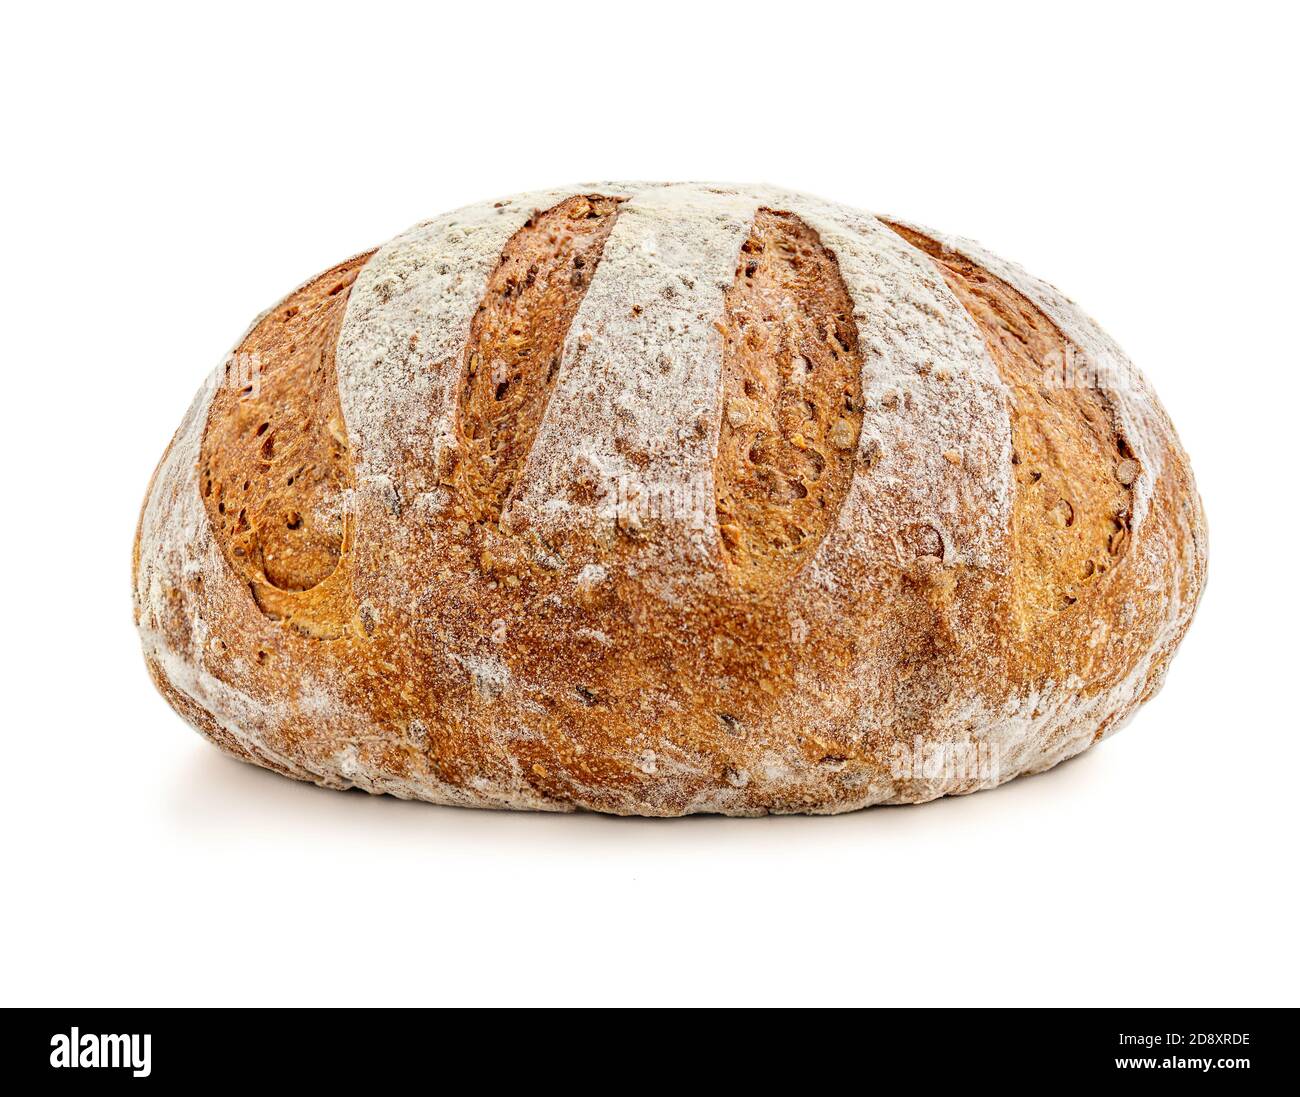 Pane appena sfornato isolato su sfondo bianco. Pane integrale piatto posare. Concetto di cibo. Foto Stock